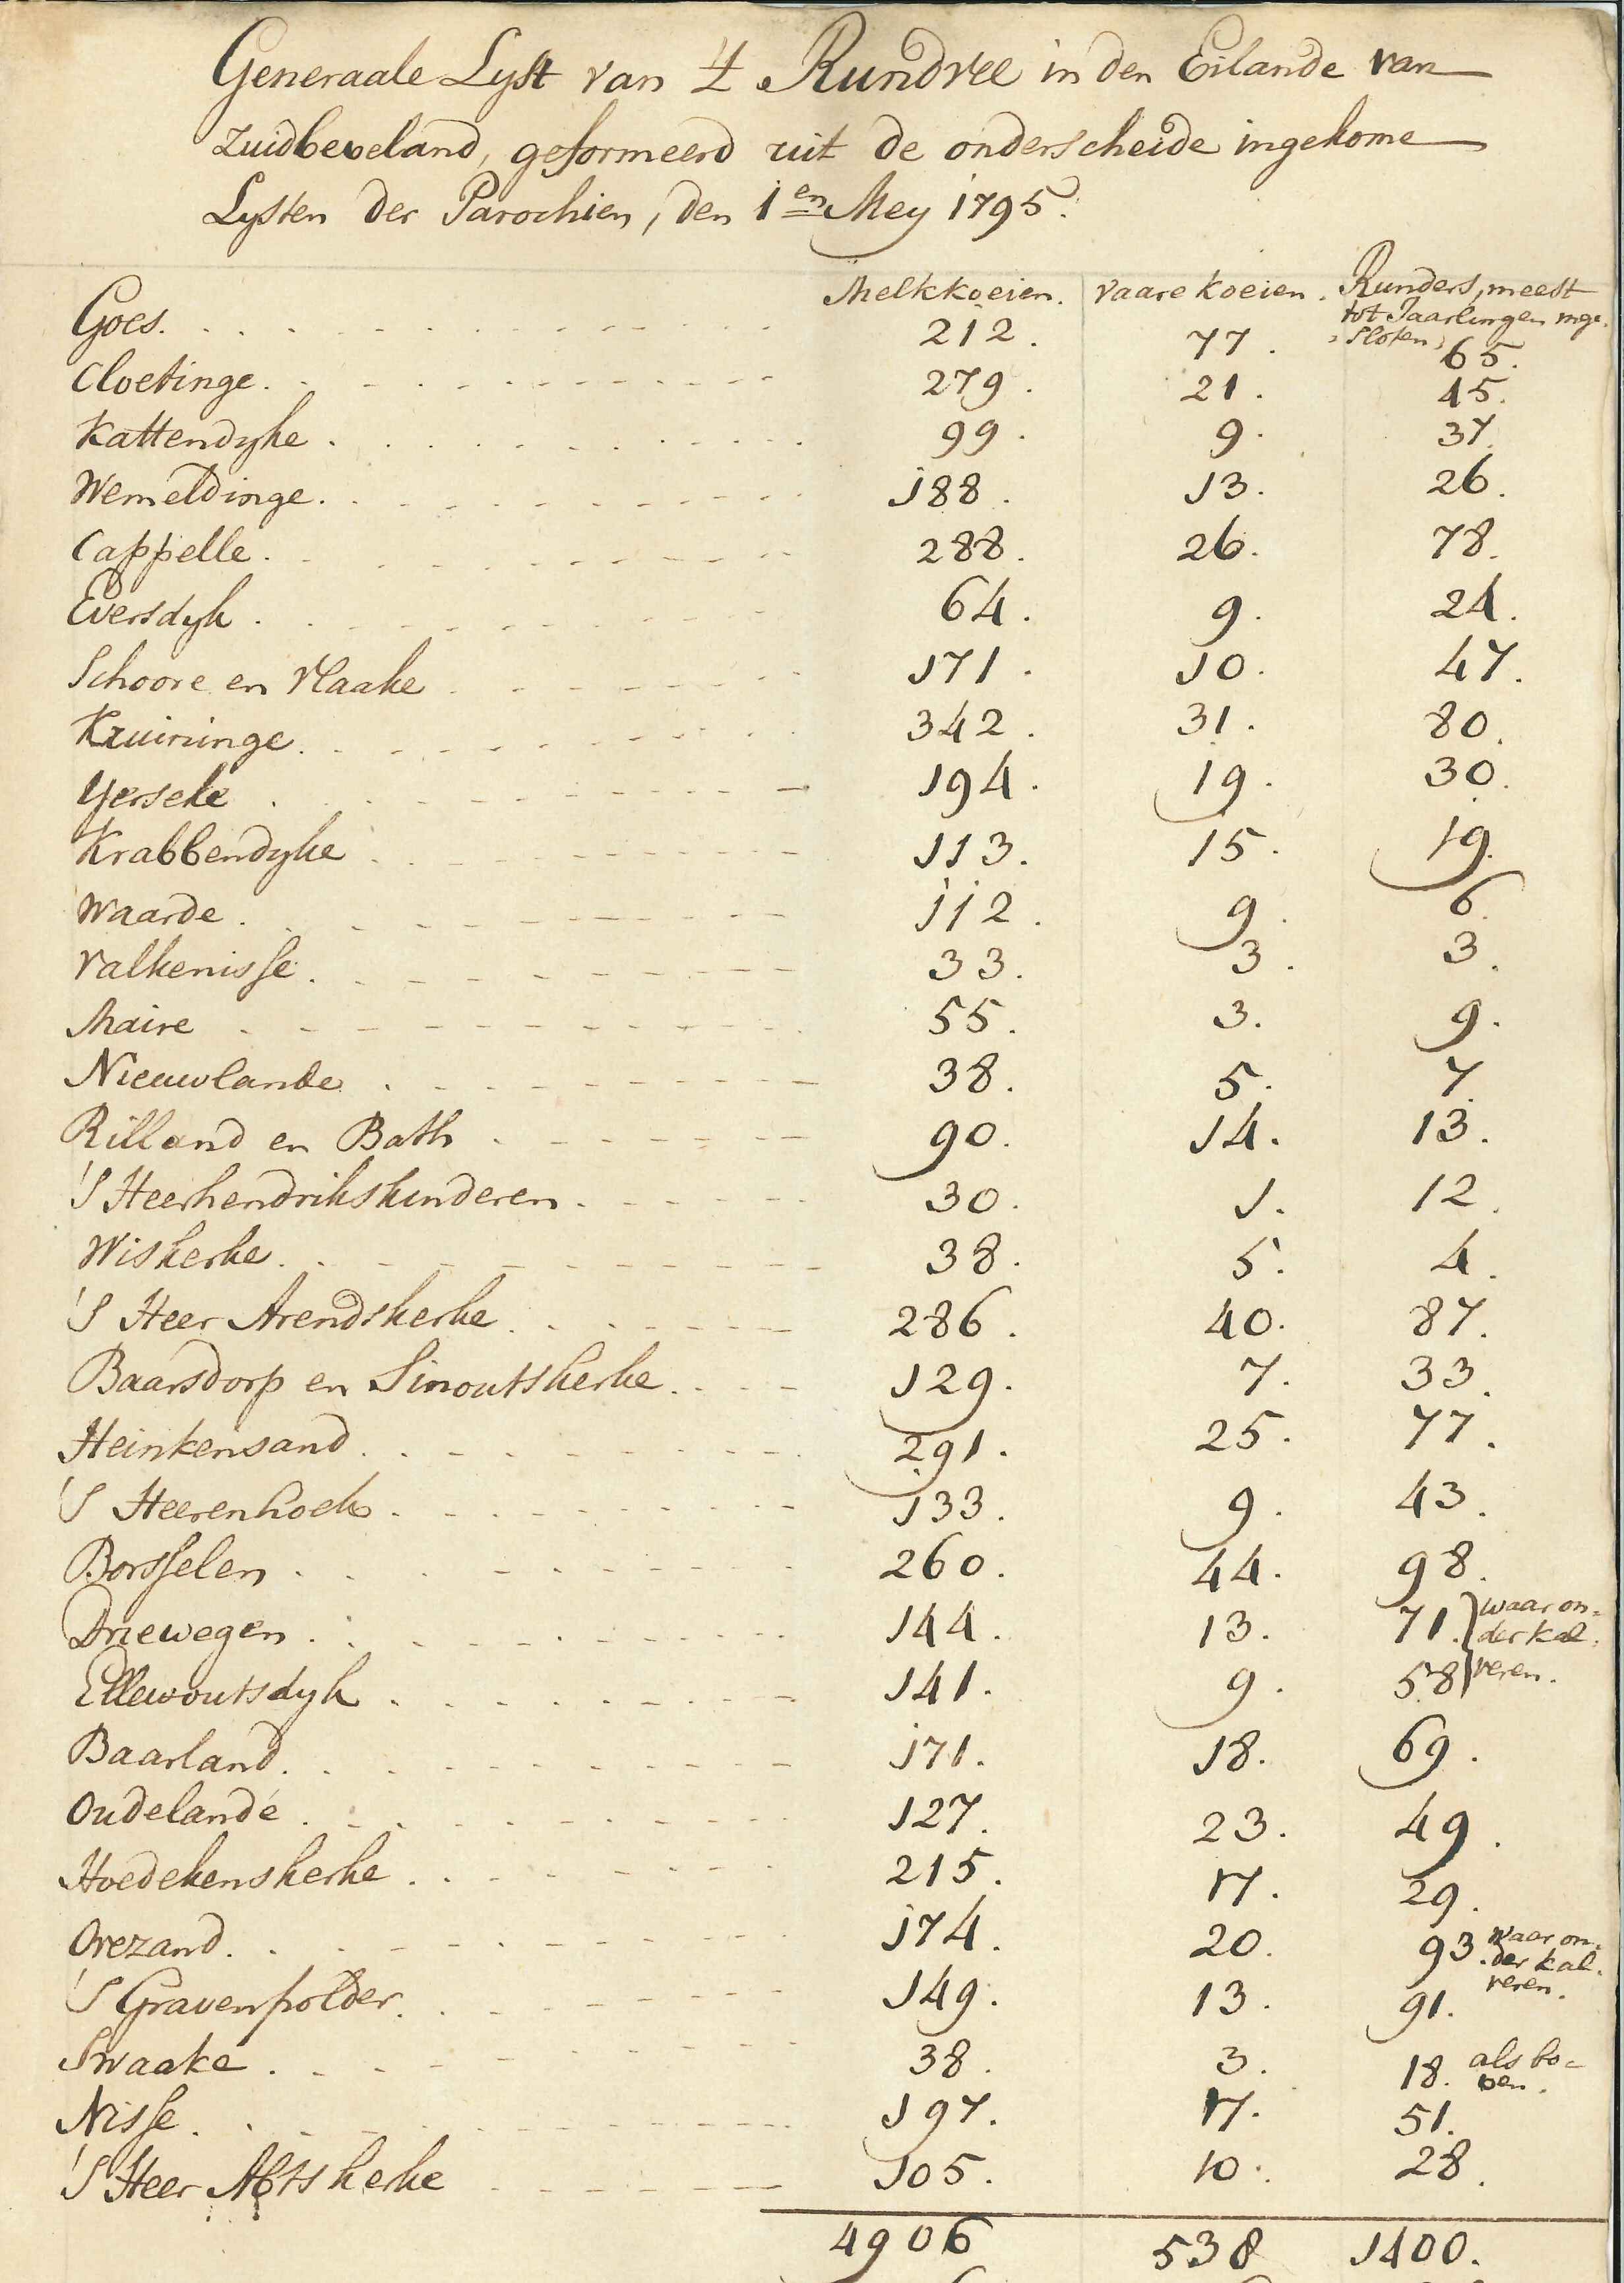 Inventarisatie van koeien in Zuid-Beveland, 1795.